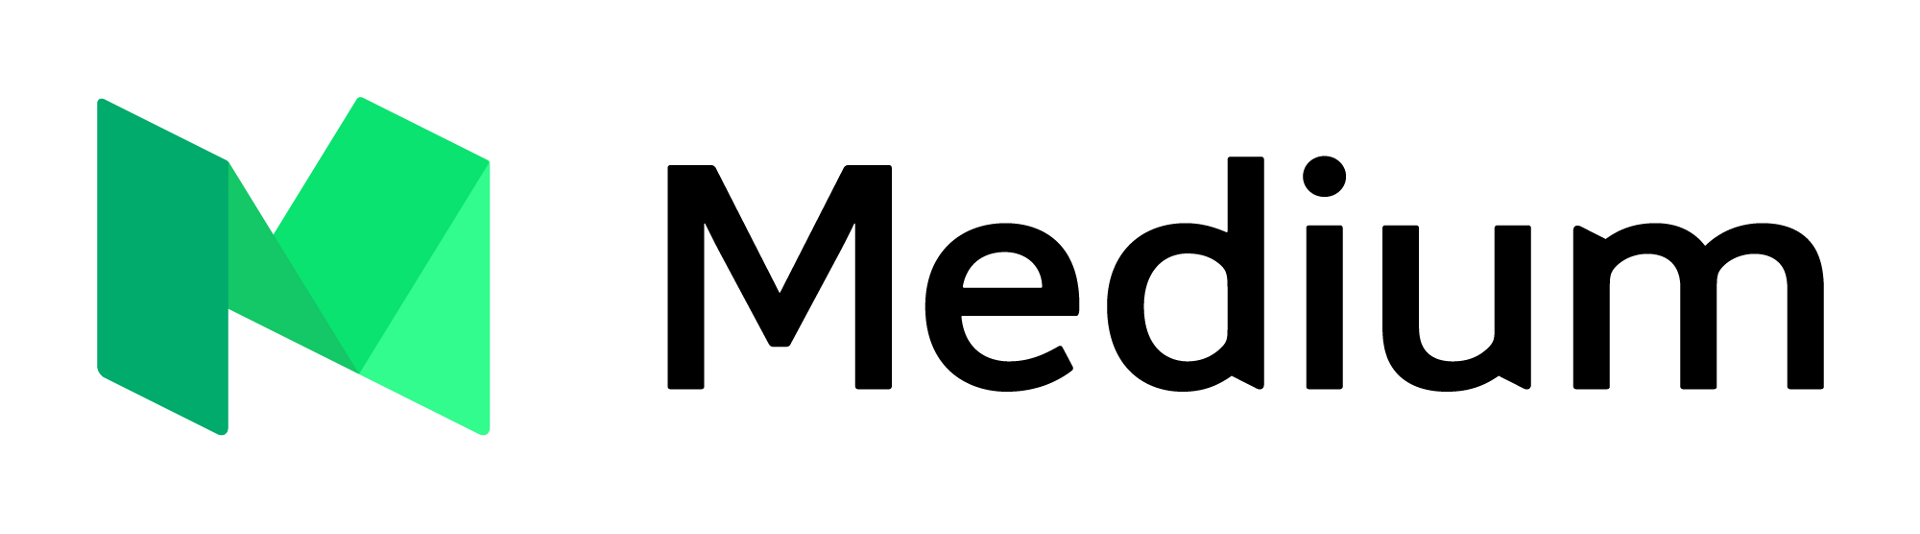 Medium com article. Media логотип. Логотип Medium com. Медиум лого. Medium картинка.